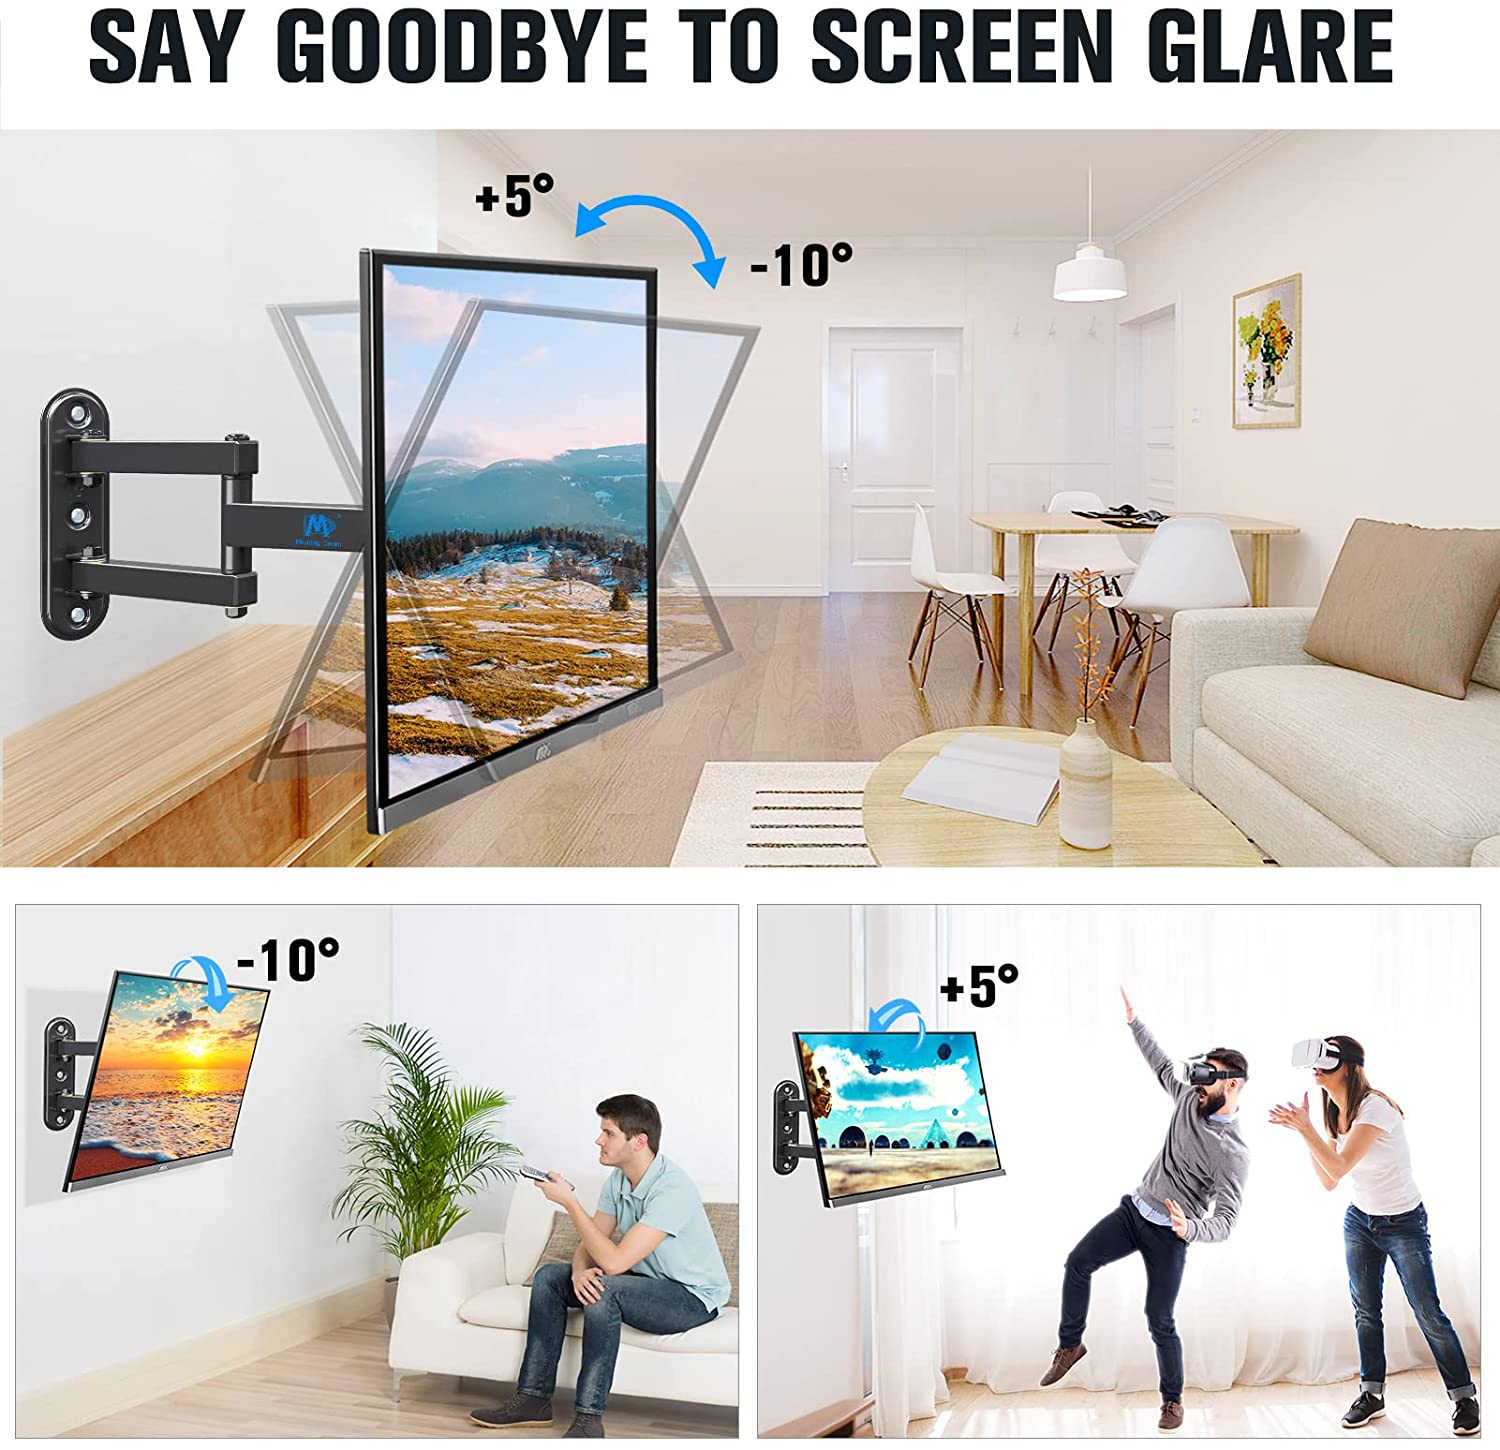 full motion tv mount tilts the TV down to reduce glare